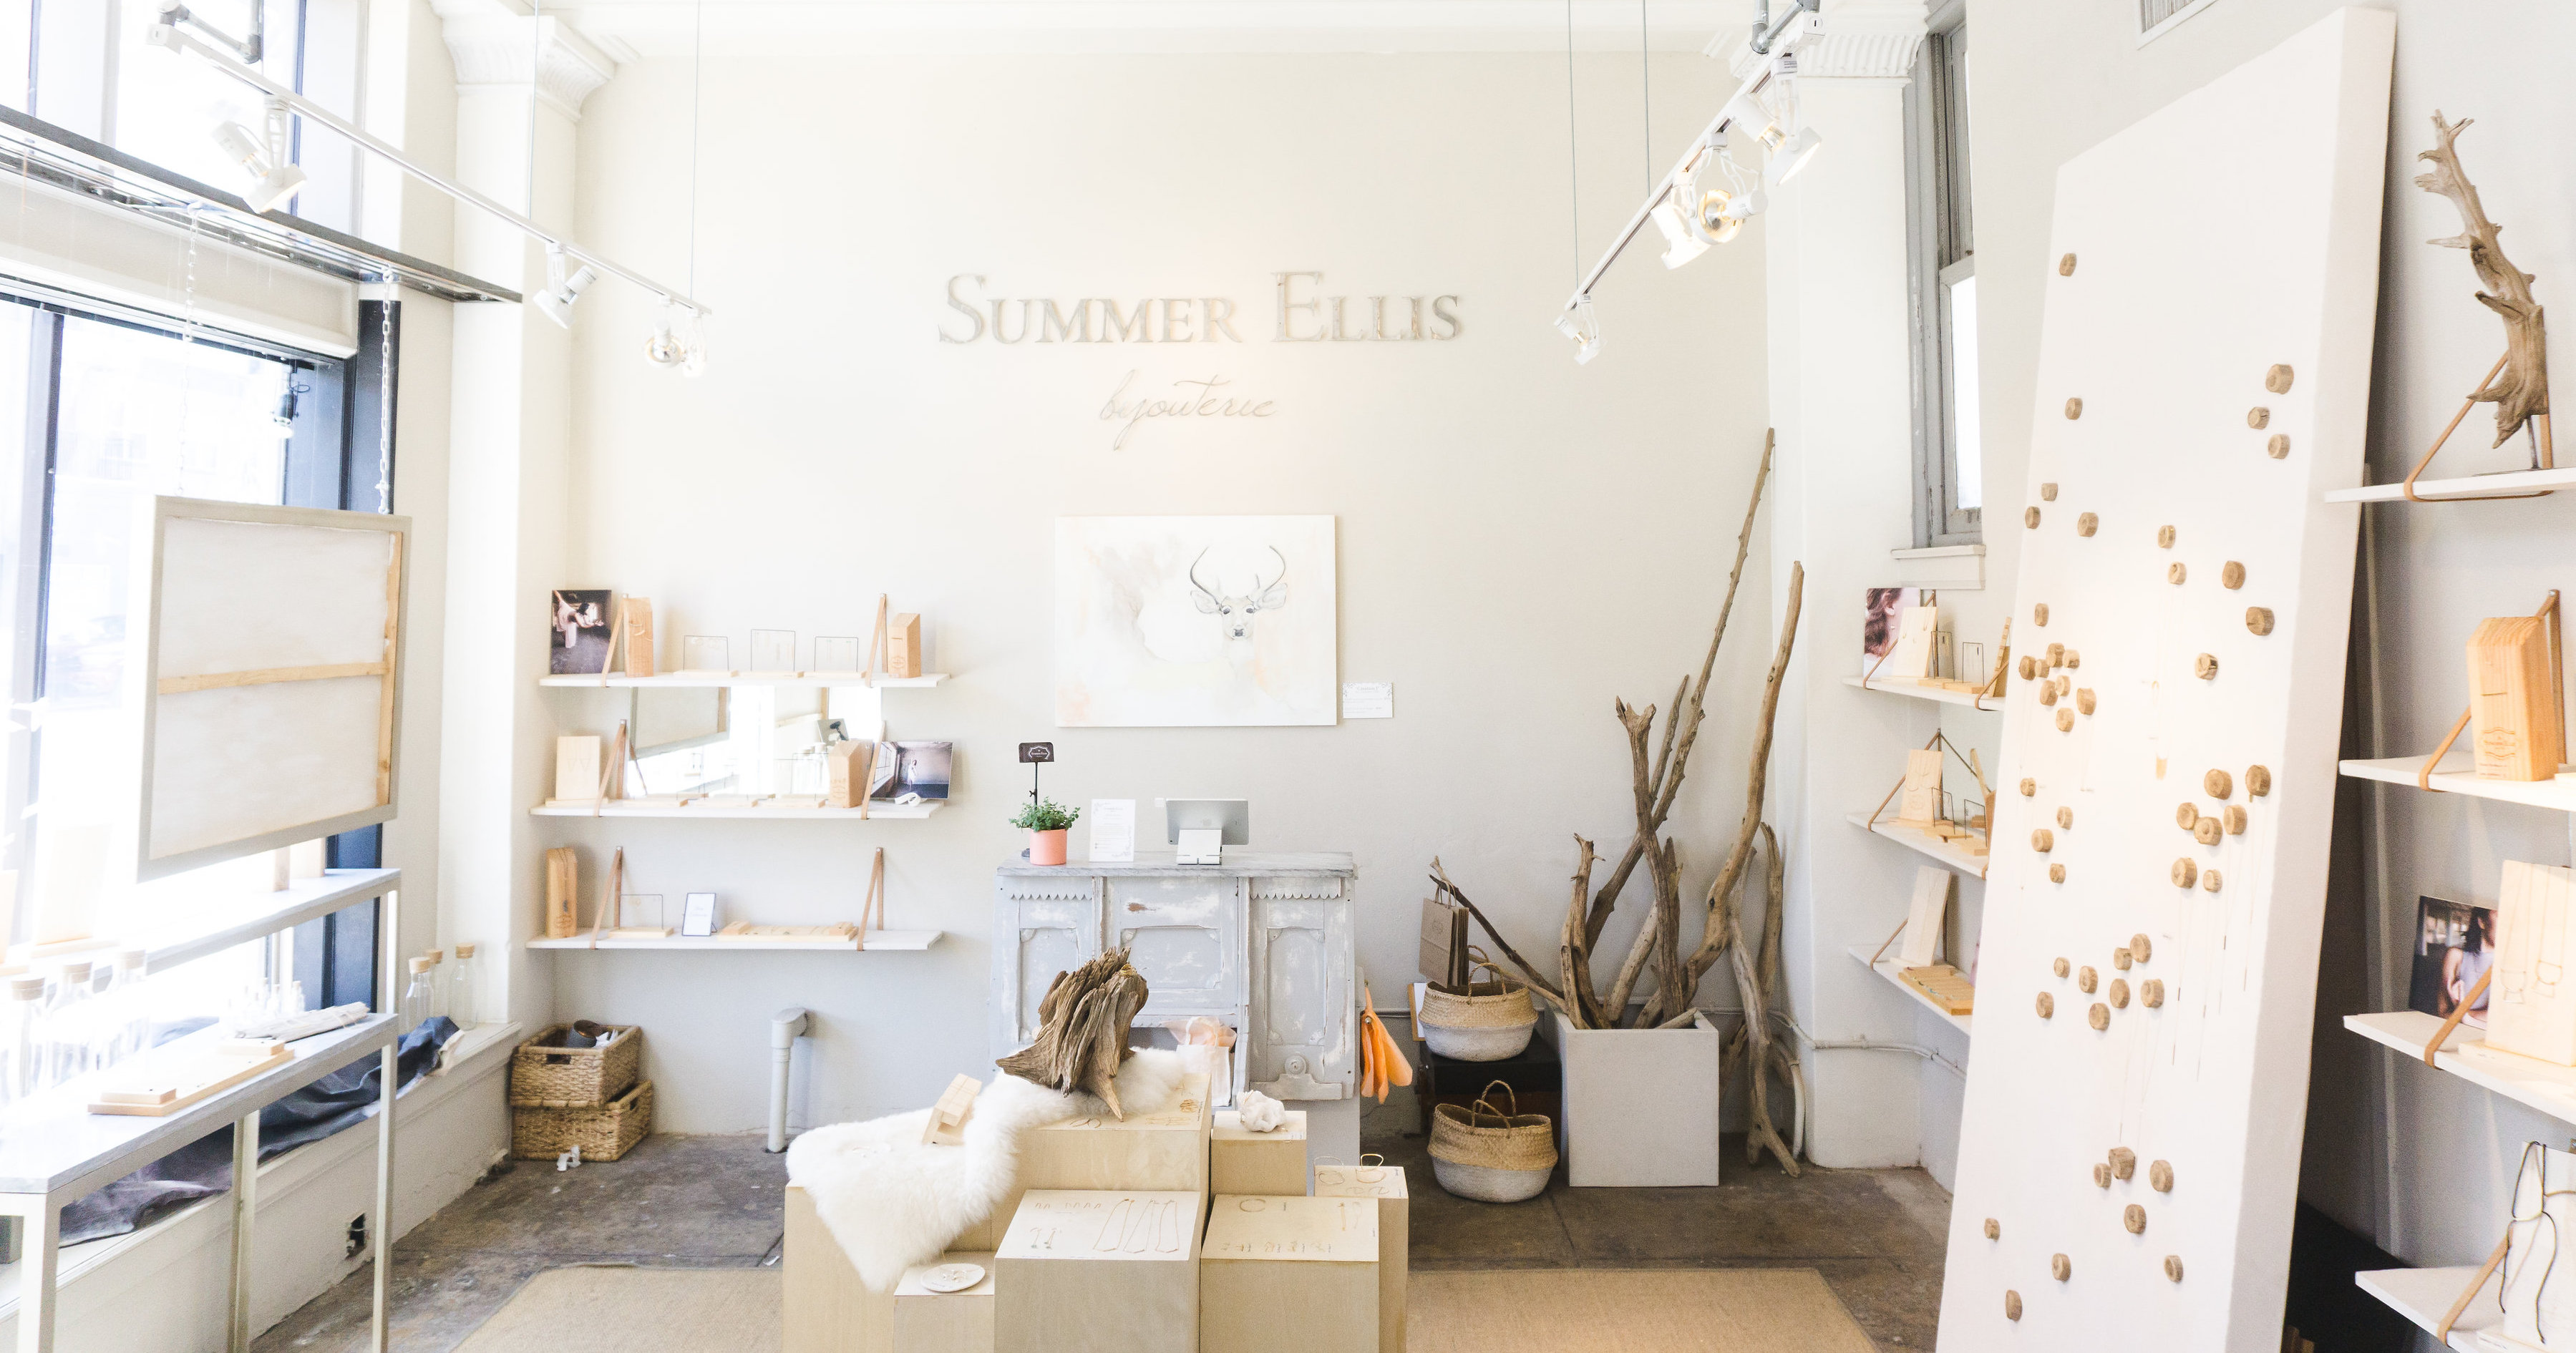 Shop Studio Hours Summer Ellis Bijouterie